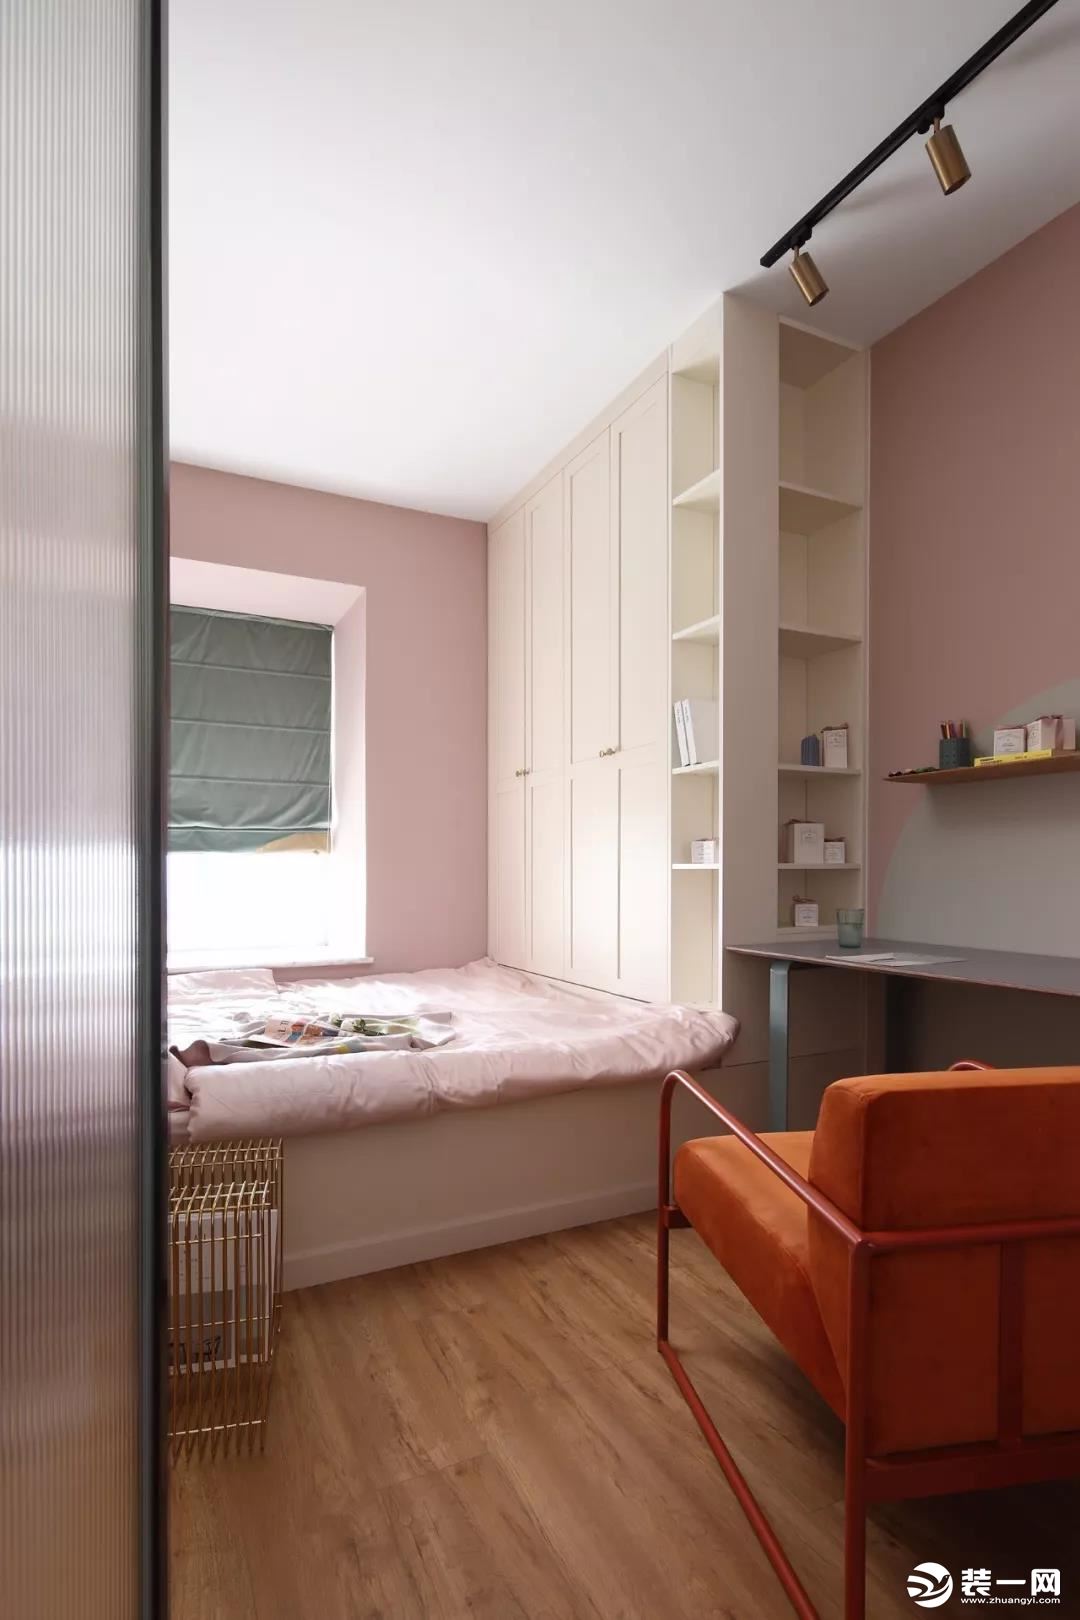 次卧的墙面和软装也同样是选择了粉色的，榻榻米床组合衣柜和书桌的设计可以满足屋主平时使用的需求，也增加